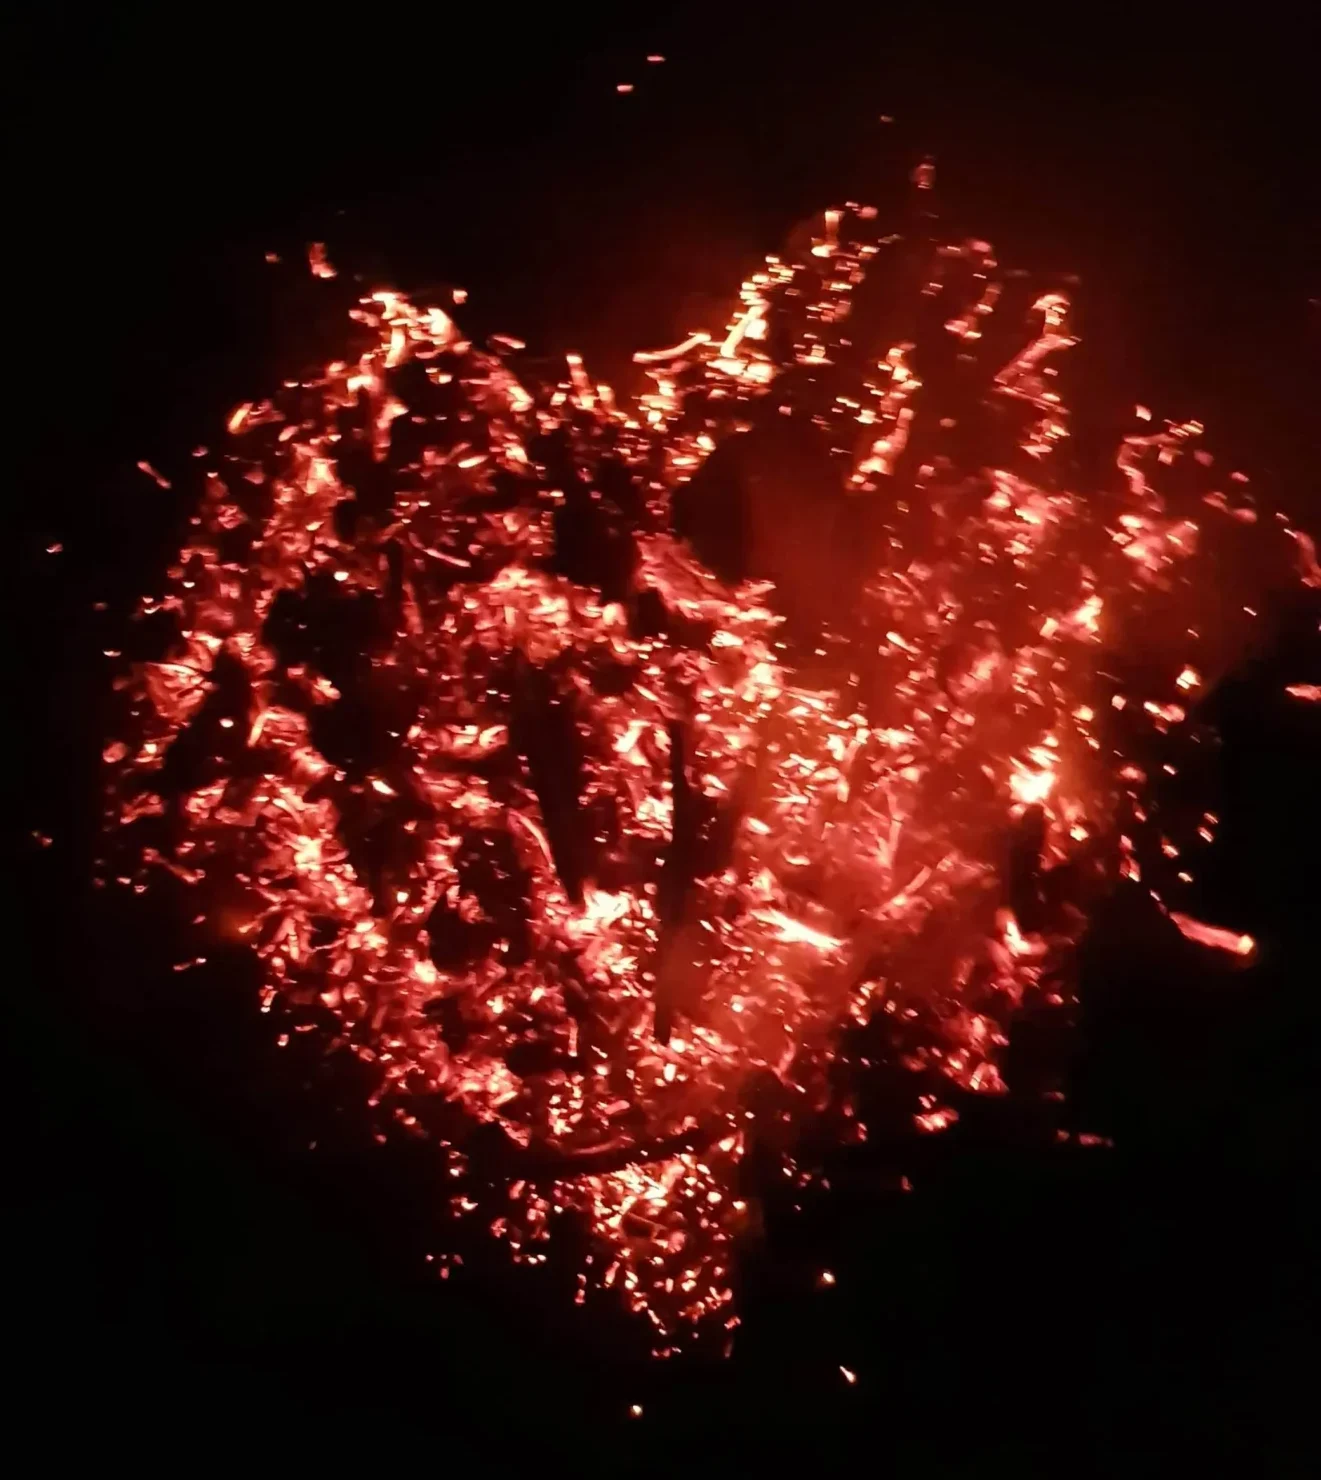 Żar z ogniska w kształcie serca.